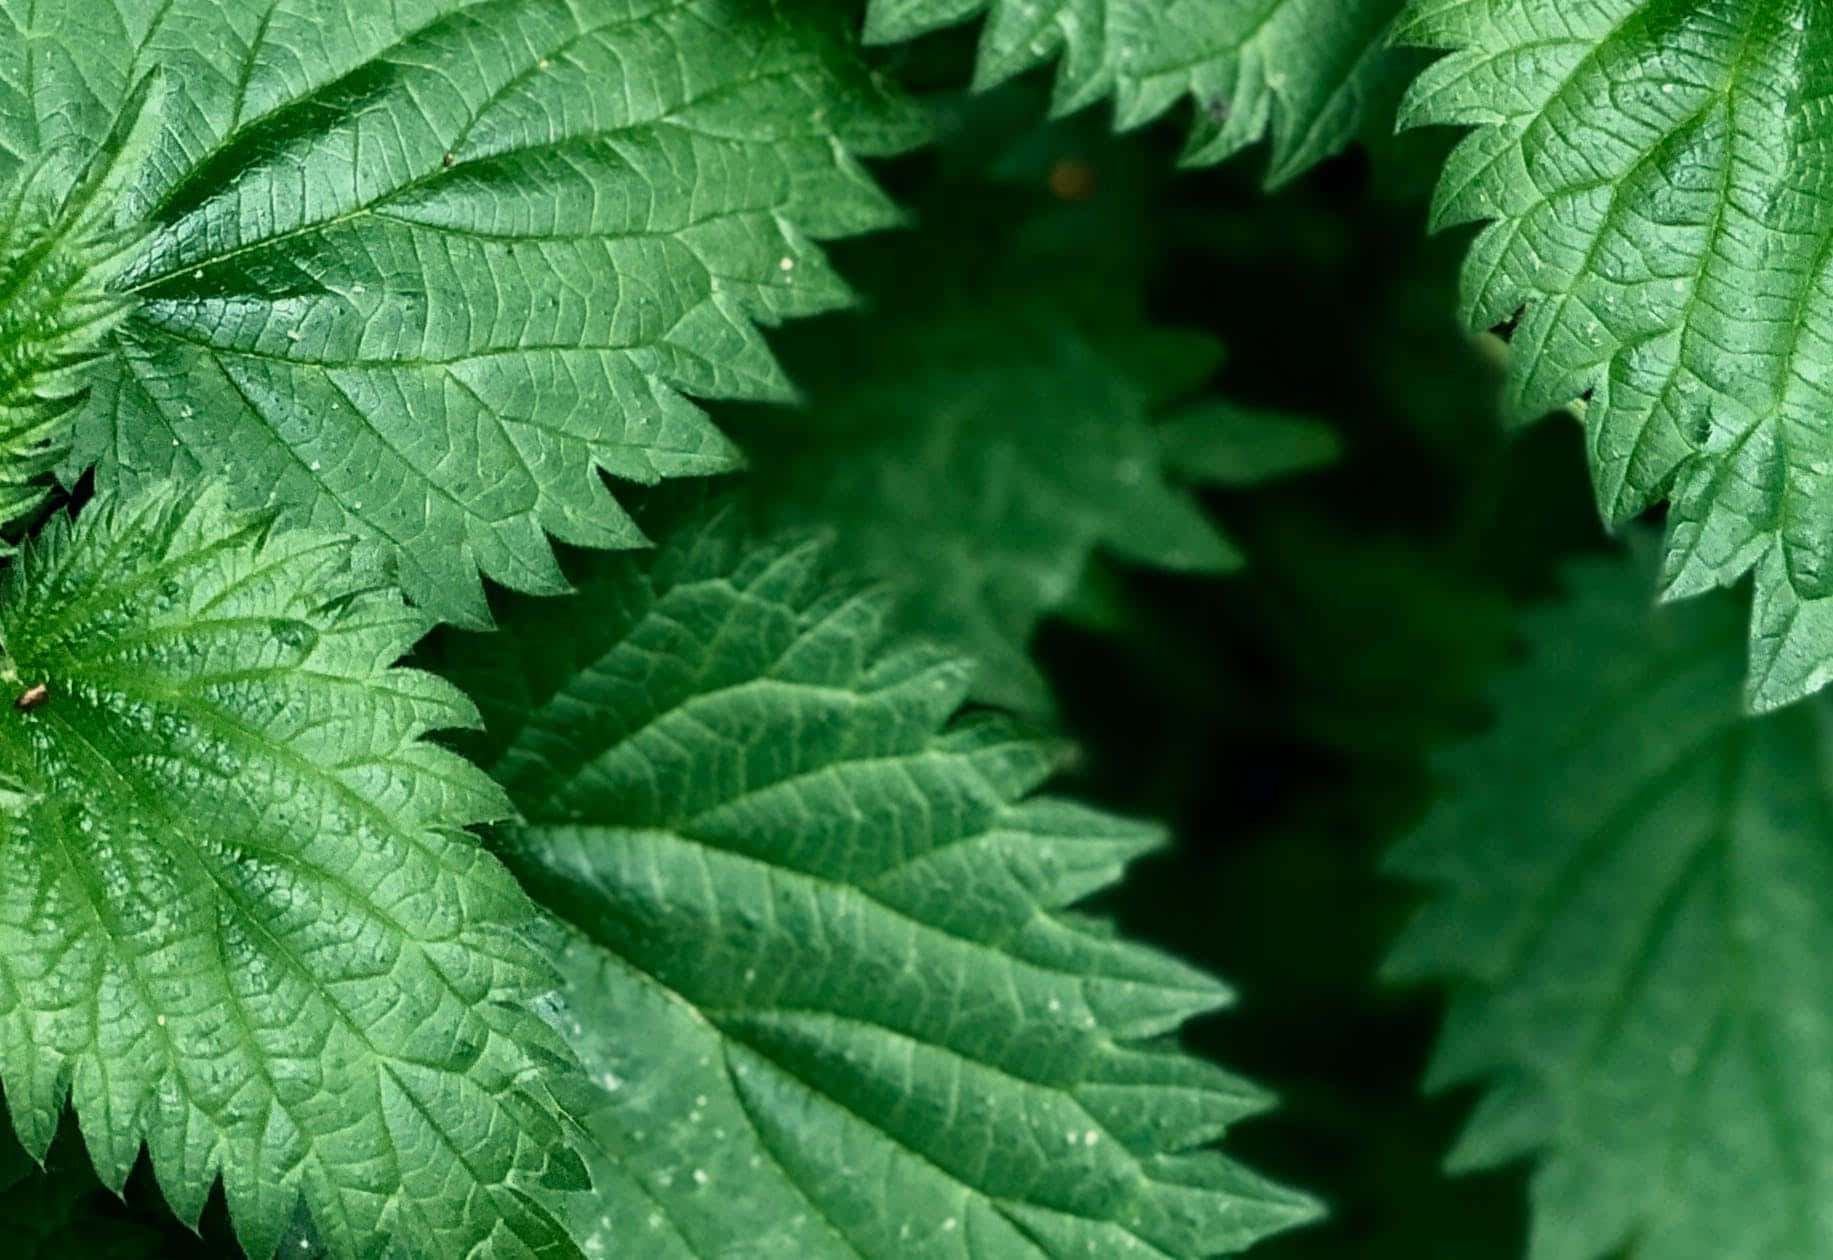 Et tæt på billedet af en grøn plante med blade